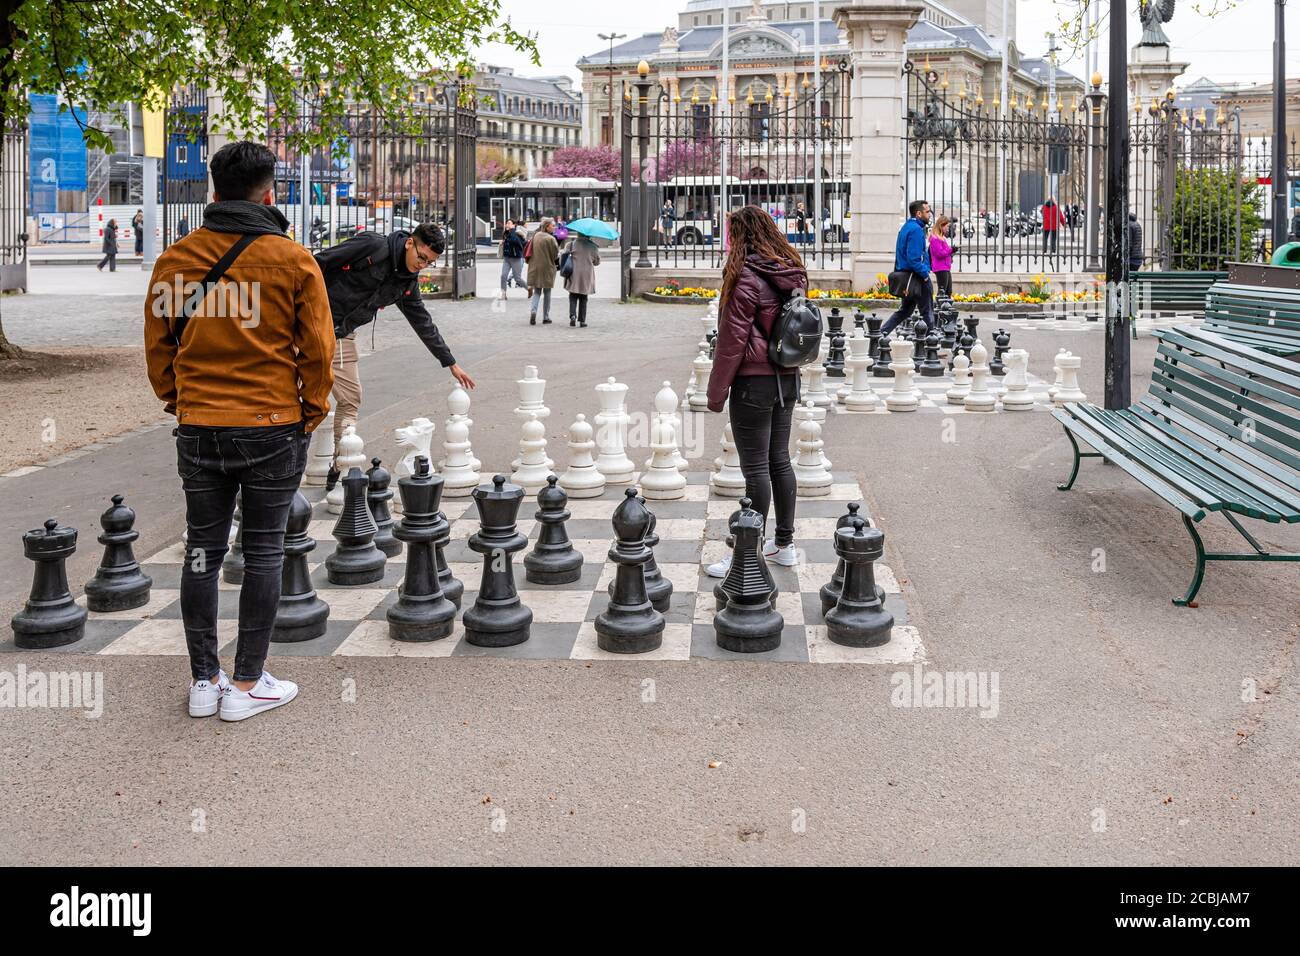 Ginebra, Suiza - 16 de abril de 2019: Gente jugando al ajedrez tradicional calle sobredimensionado en el Parc des Bastions - imagen Foto de stock